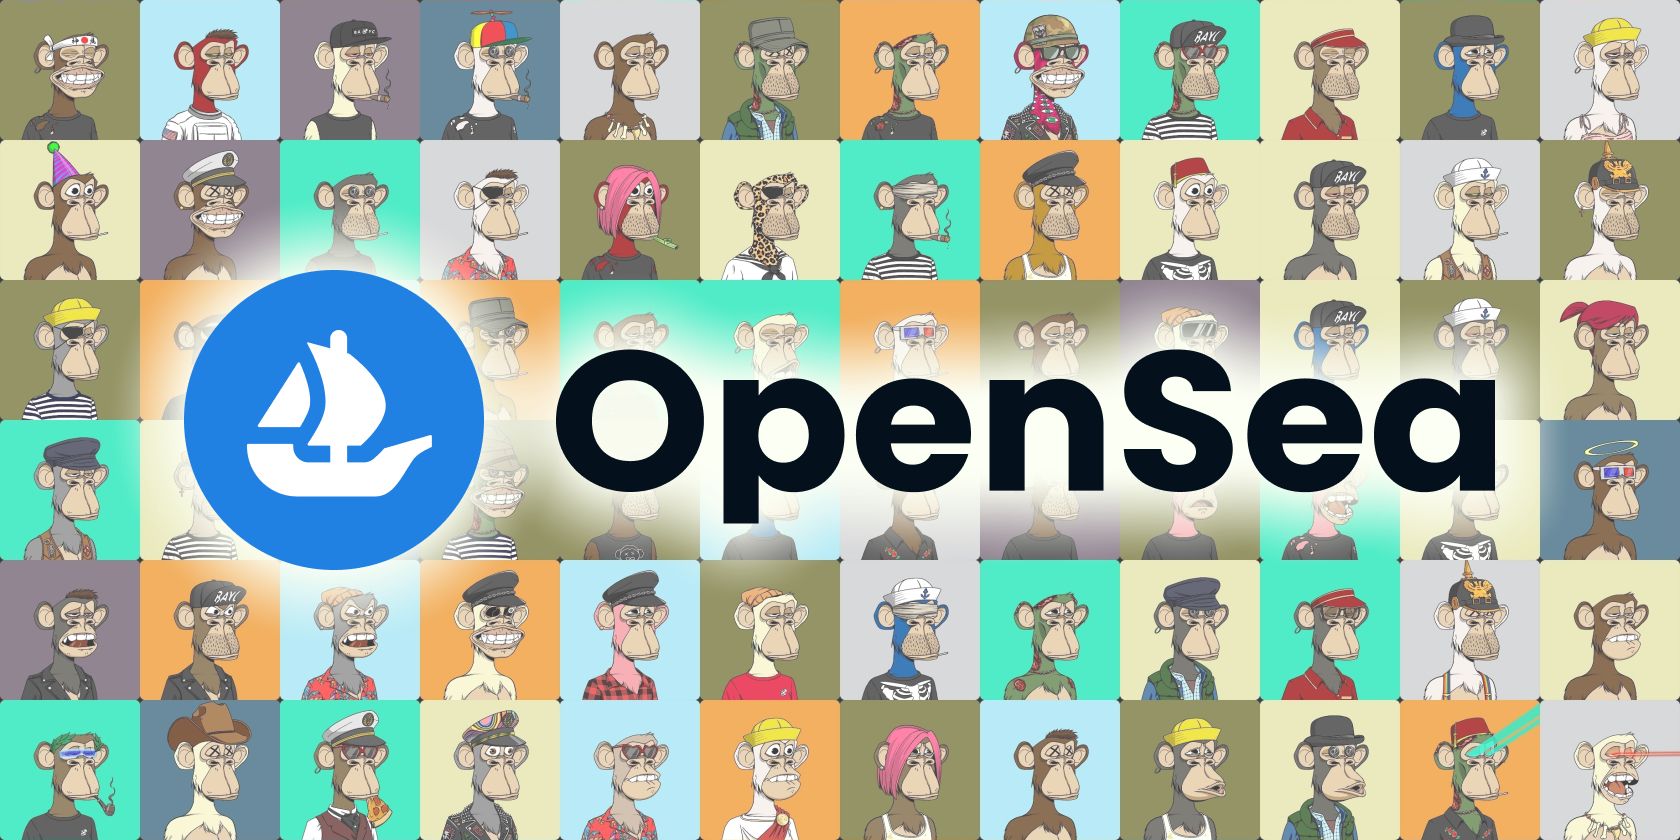 opensea nft marketplace logo feature